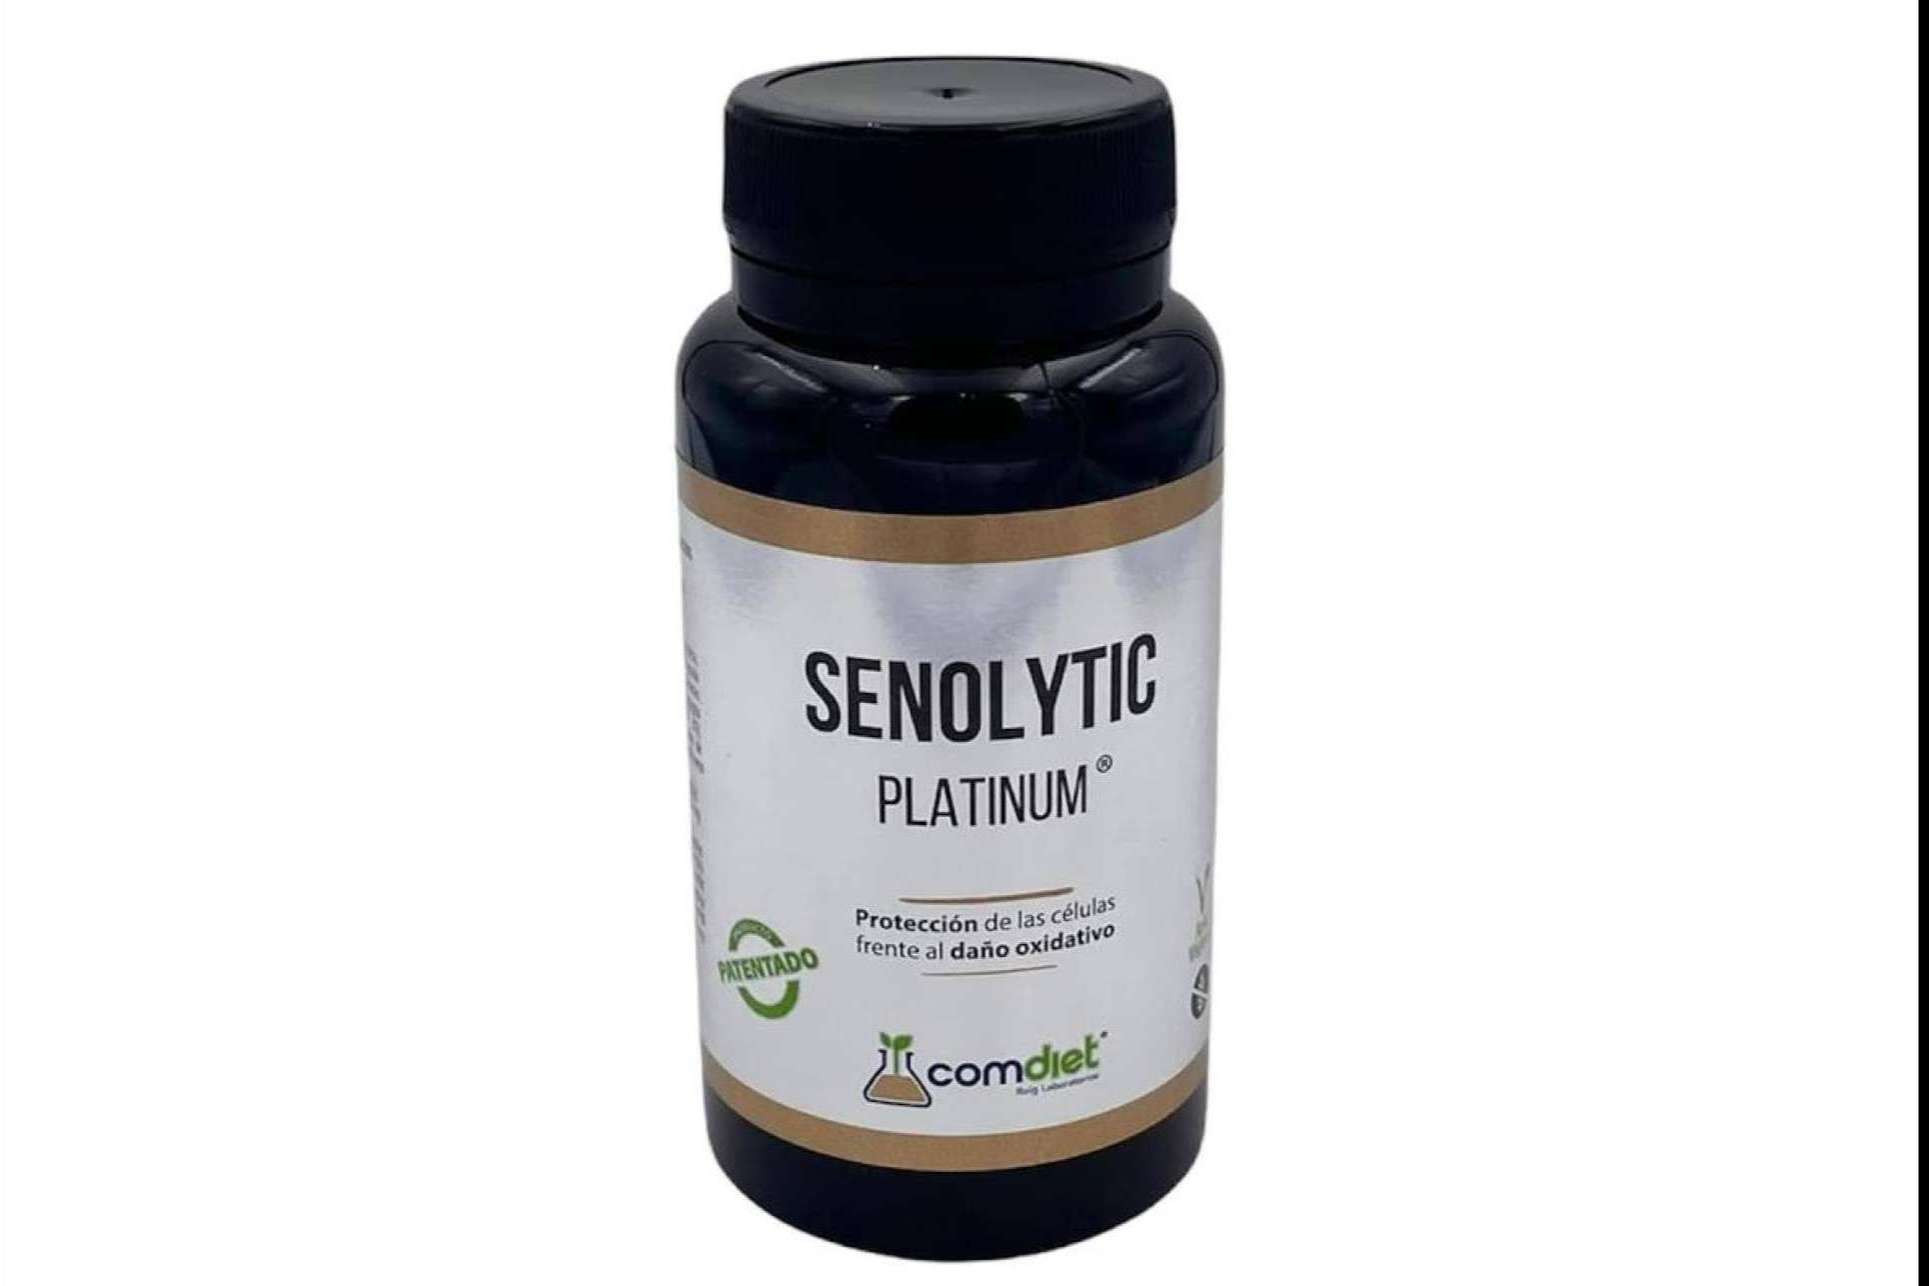  Comdiet Roig Laboratorios y su fórmula Senolytic Platinum 